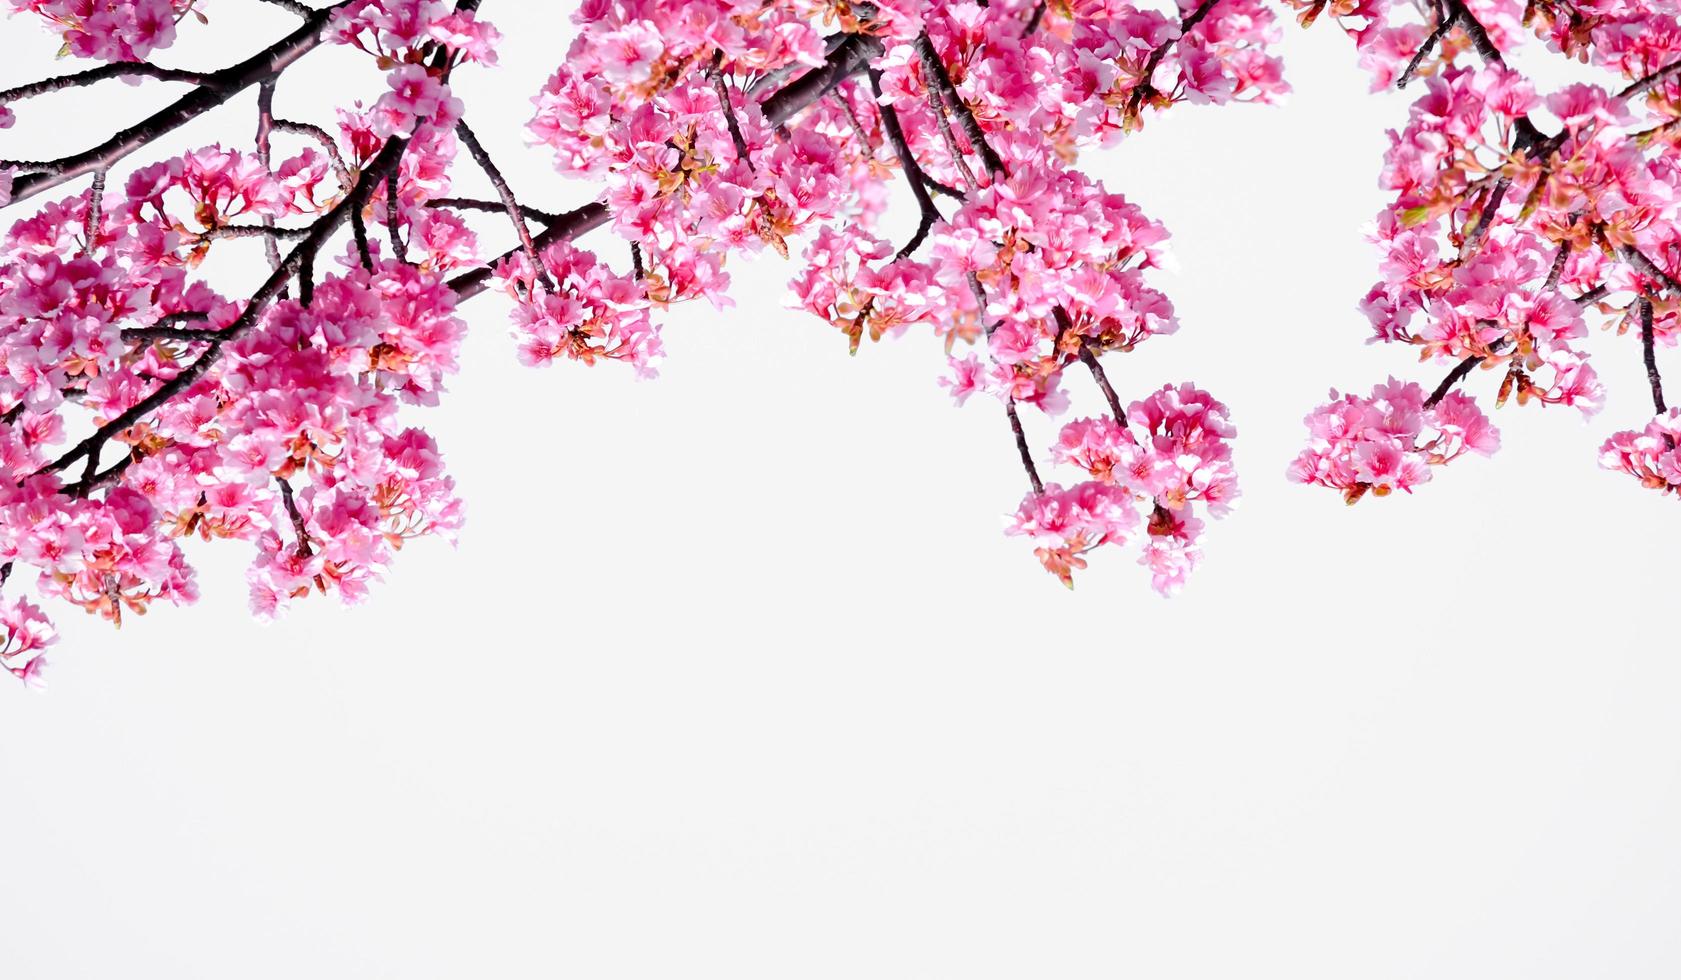 morbido pastello colore bellissimo ciliegia fiorire sakura fioritura con dissolvenza in pastello rosa sakura fiore, pieno fioritura un' primavera stagione nel Giappone foto